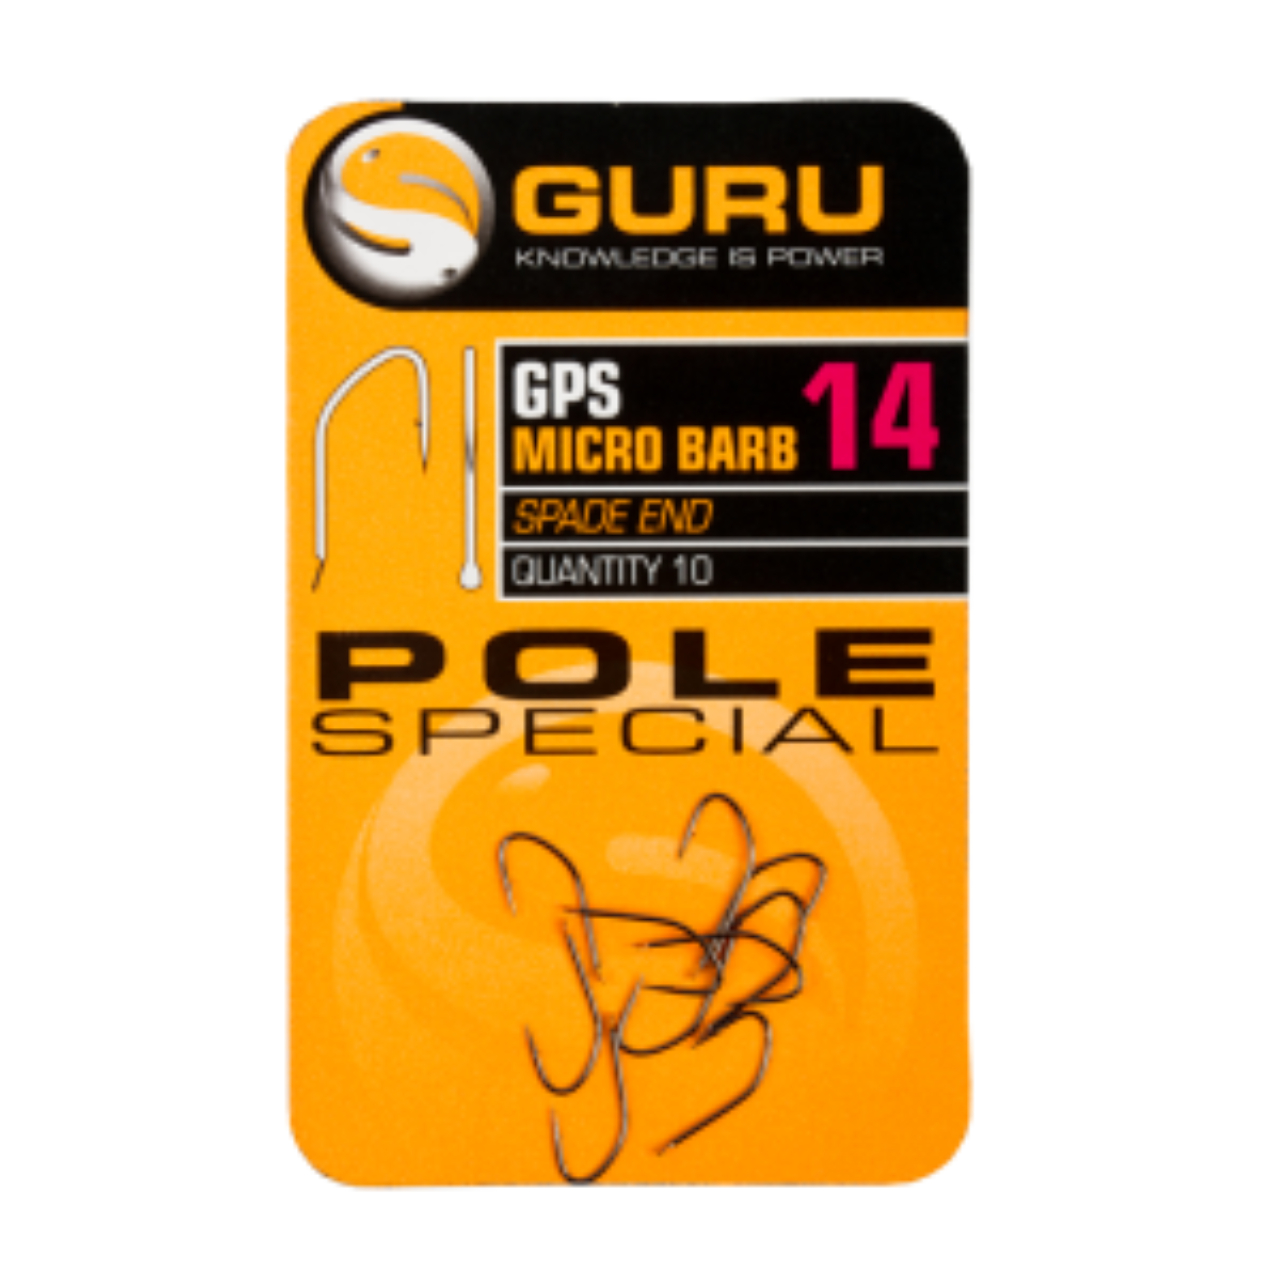 Guru Pole Special Hook GPH14.jpg